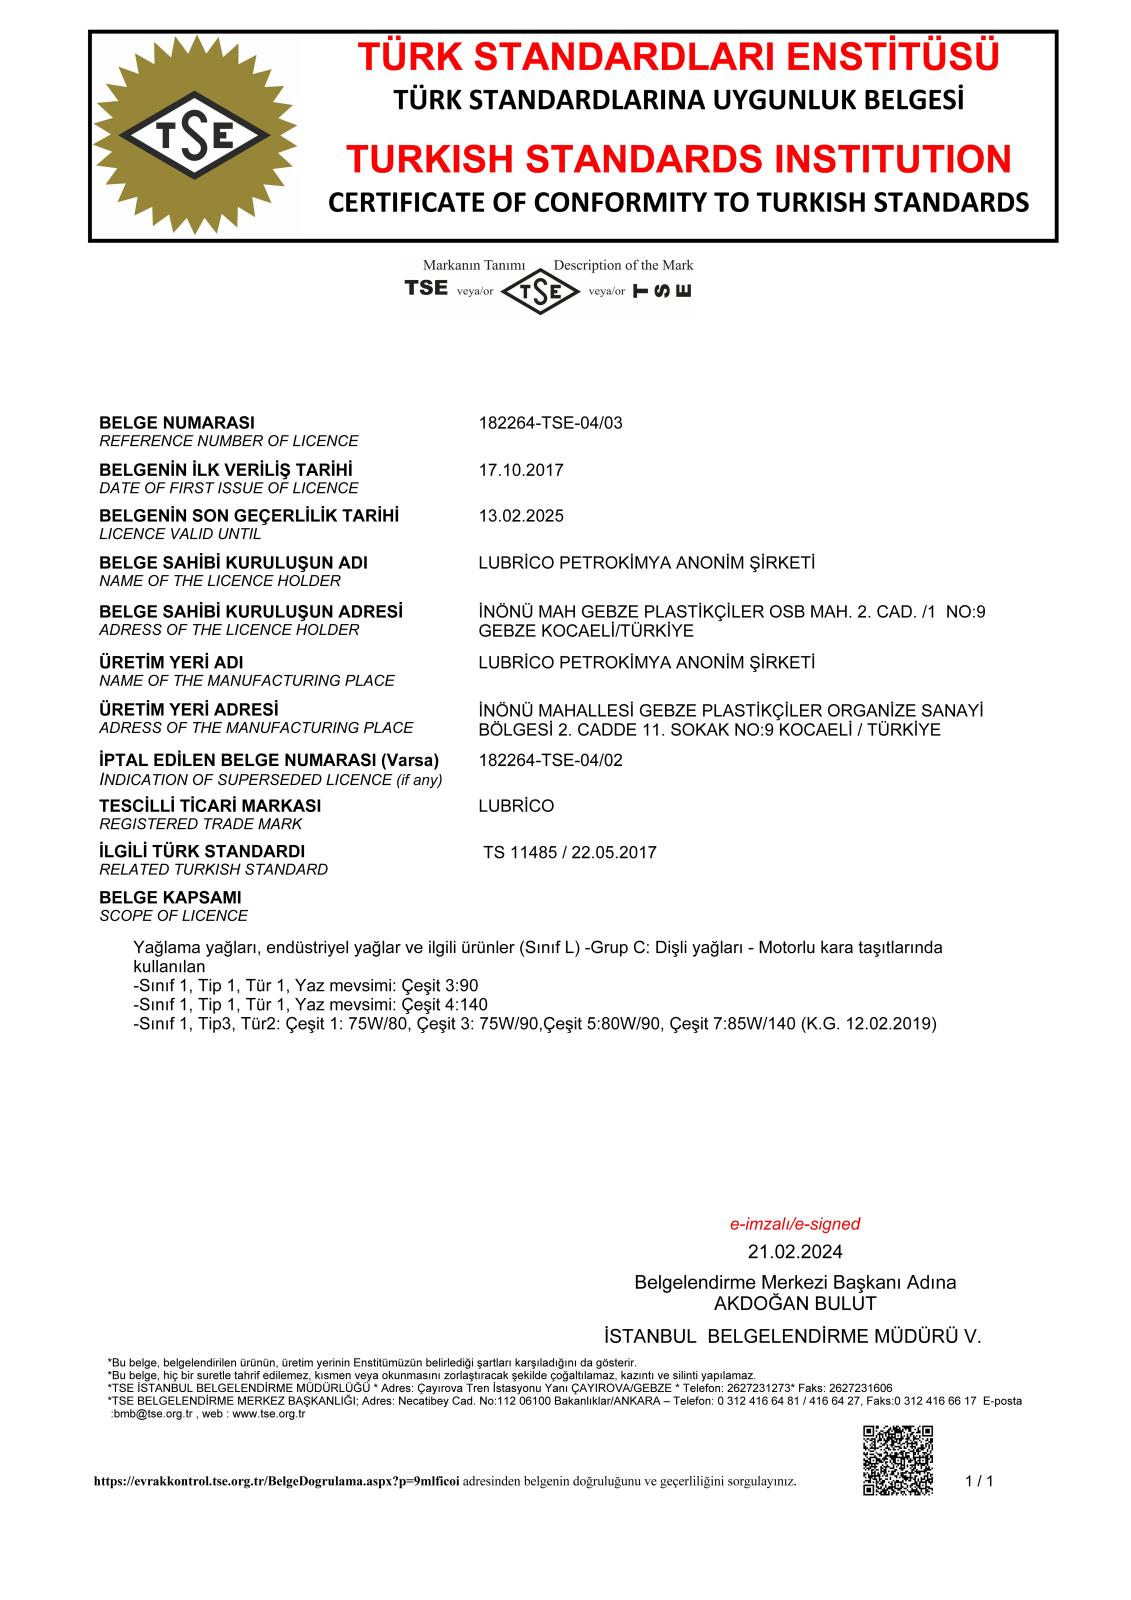 TSE Certificate of Conformity TS 11485